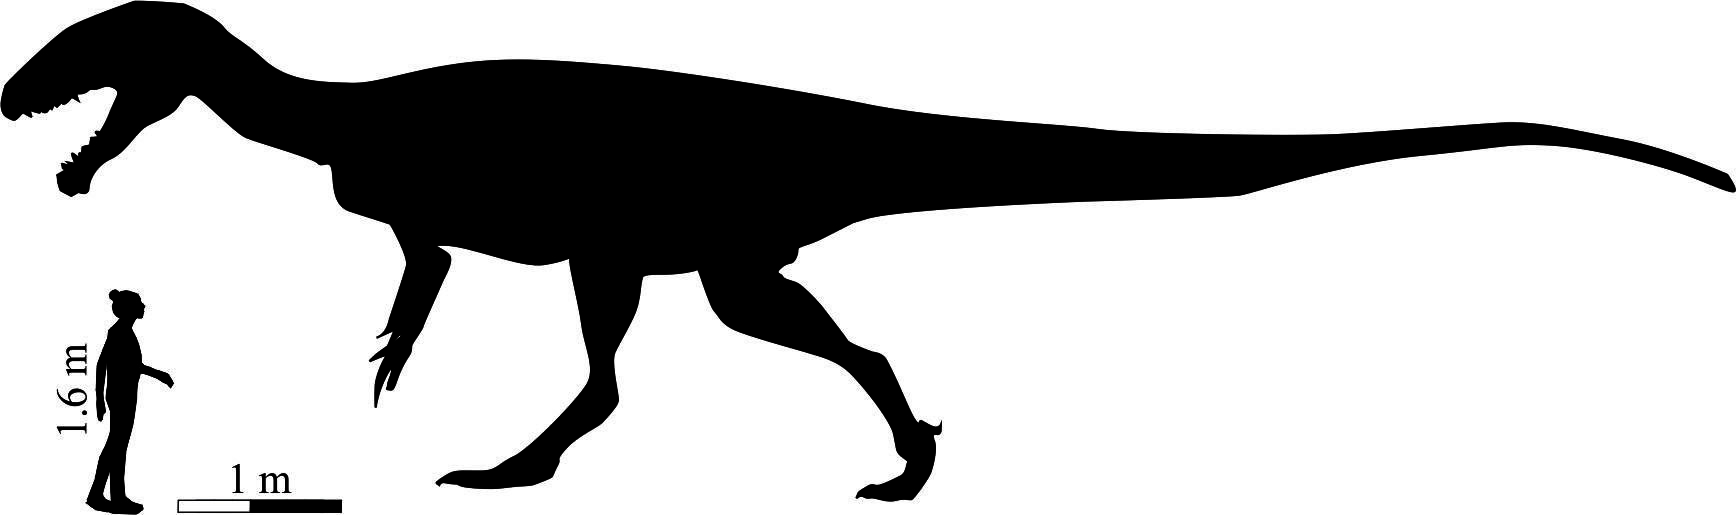 Сравнение размеров динозавра с ростом человека. Фото: © Phys.org